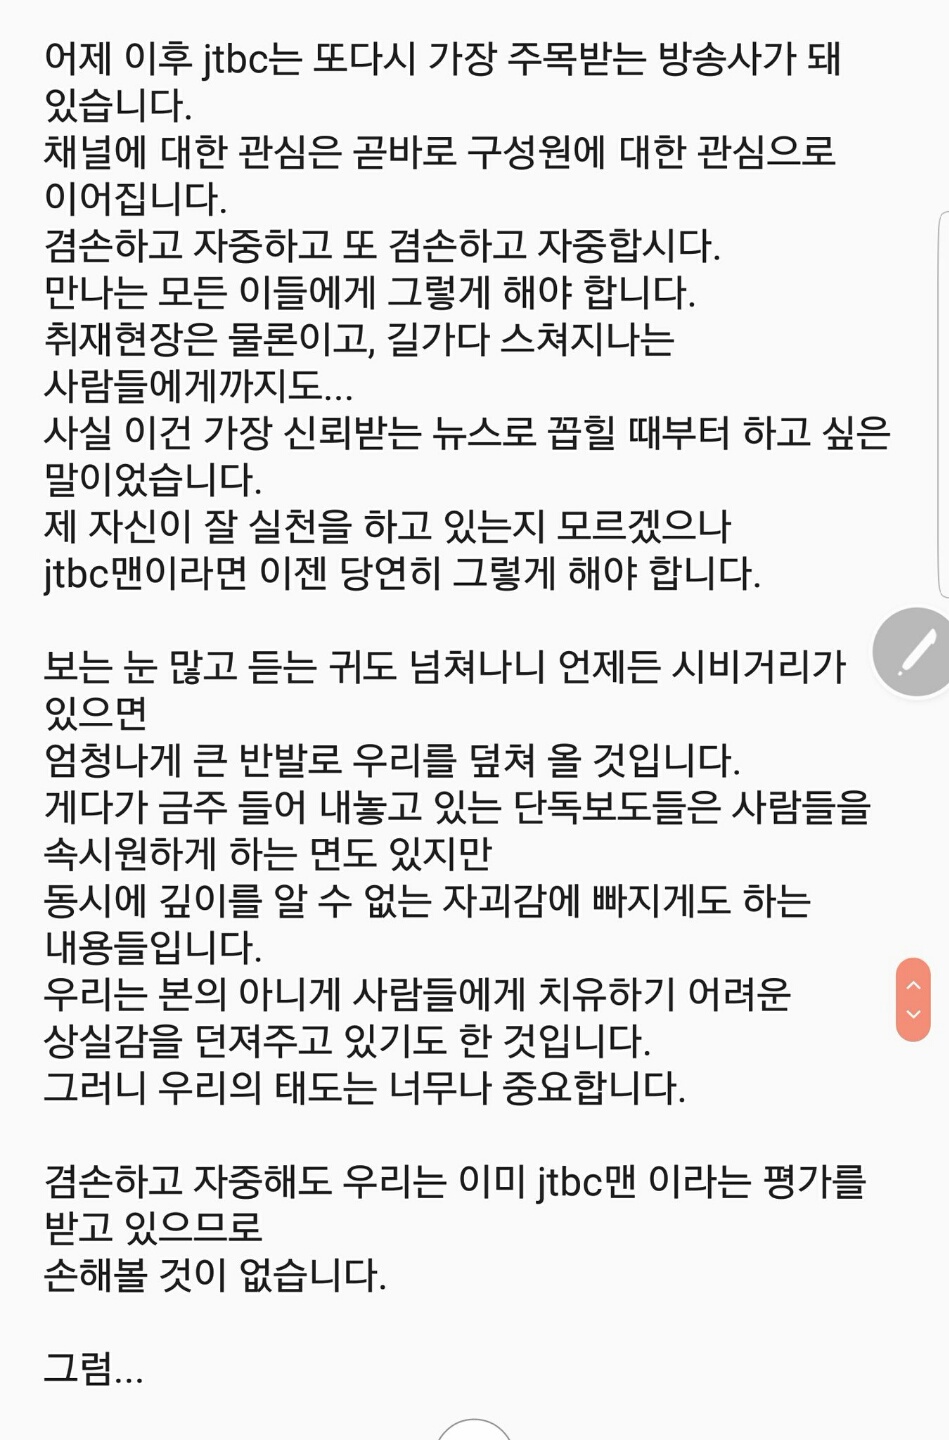 ‘최순실 의혹’ 보도 후 JTBC 직원들에게 보냈다고 전해지는 손석희 JTBC 보도국 사장의 메세지.